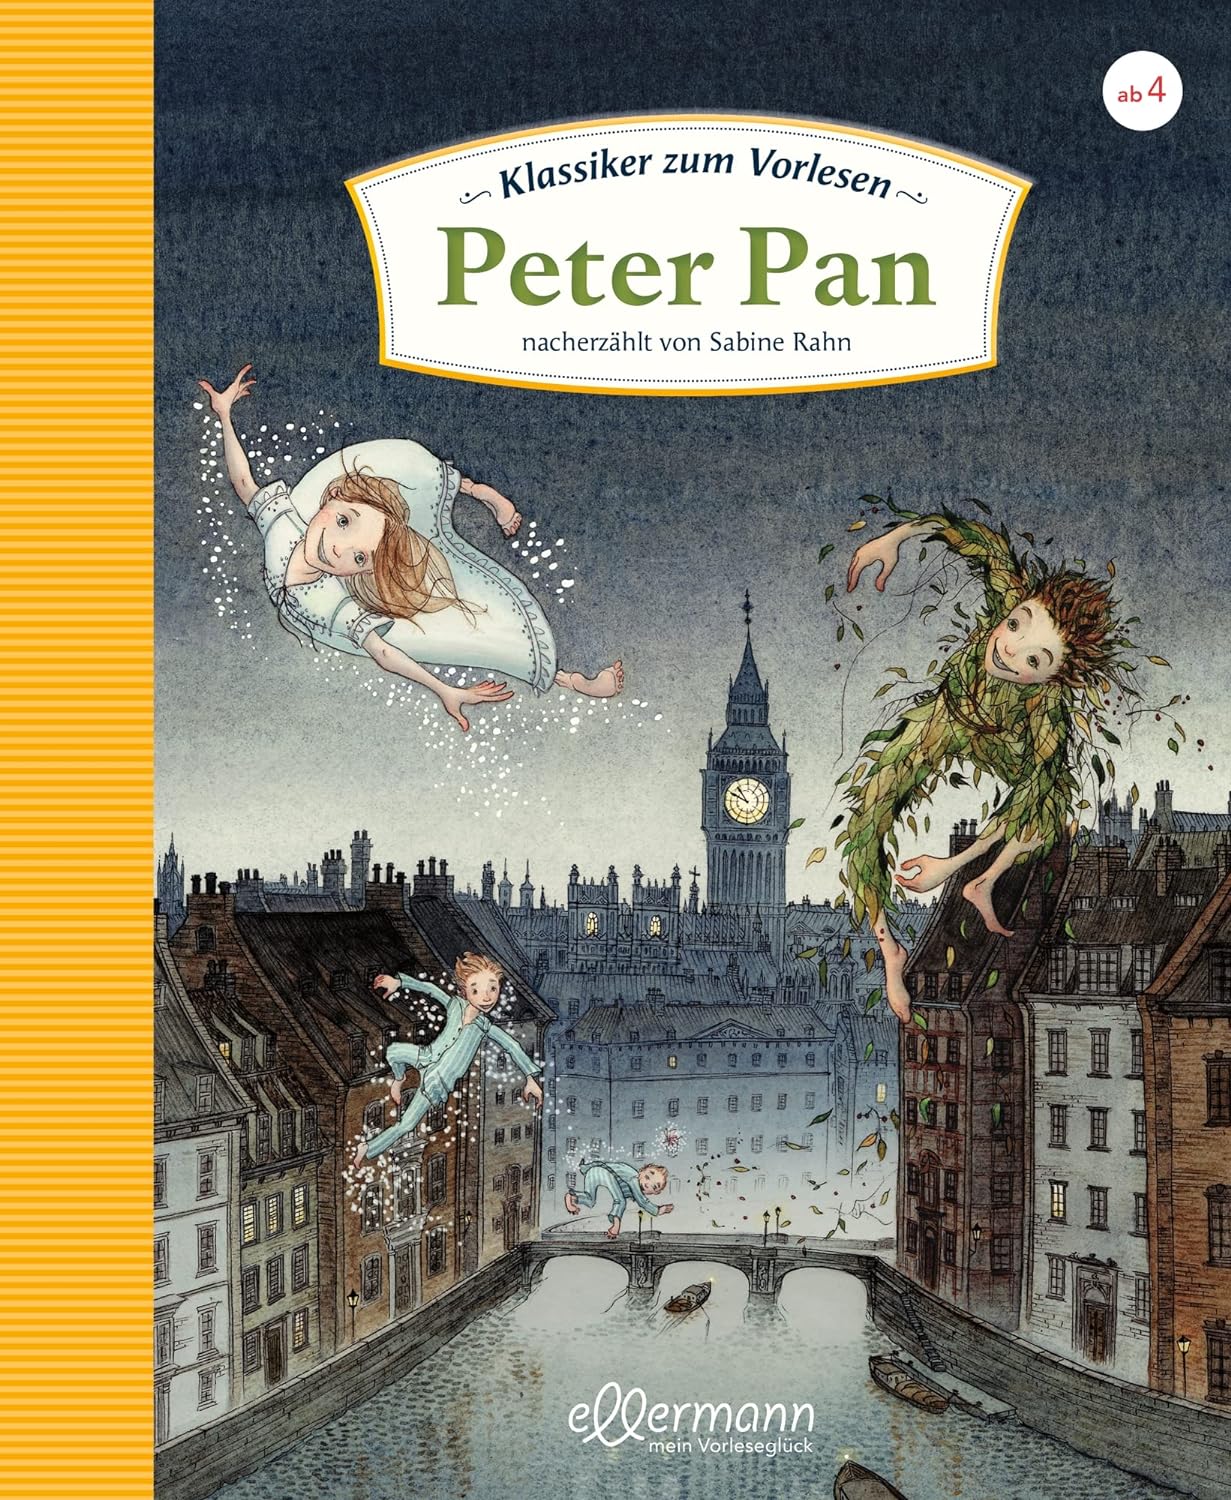 Buchcover von 'Peter Pan' von J.M. Barrie, ein abenteuerliches Kinderbuch zum Vorlesen, zeigt Peter Pan, der über London fliegt, umgeben von Wendy, John und Michael.